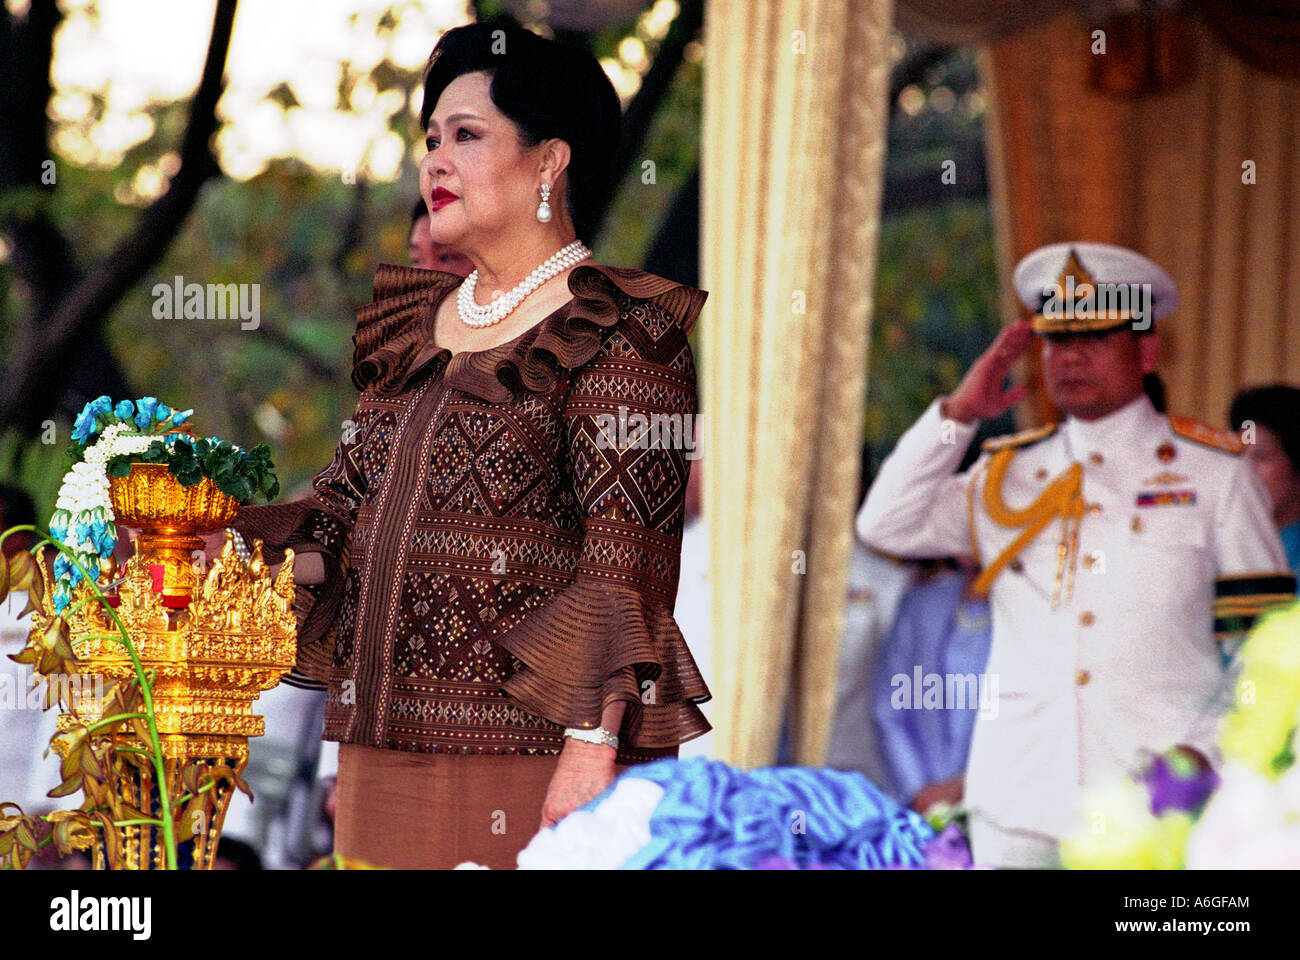 Thaïlande, Bangkok La Reine Sirikit, épouse de Bhumibol Adulyadej (Rama IX), Roi de Thaïlande, au cours de l'ouverture parc Benjakiti. Banque D'Images